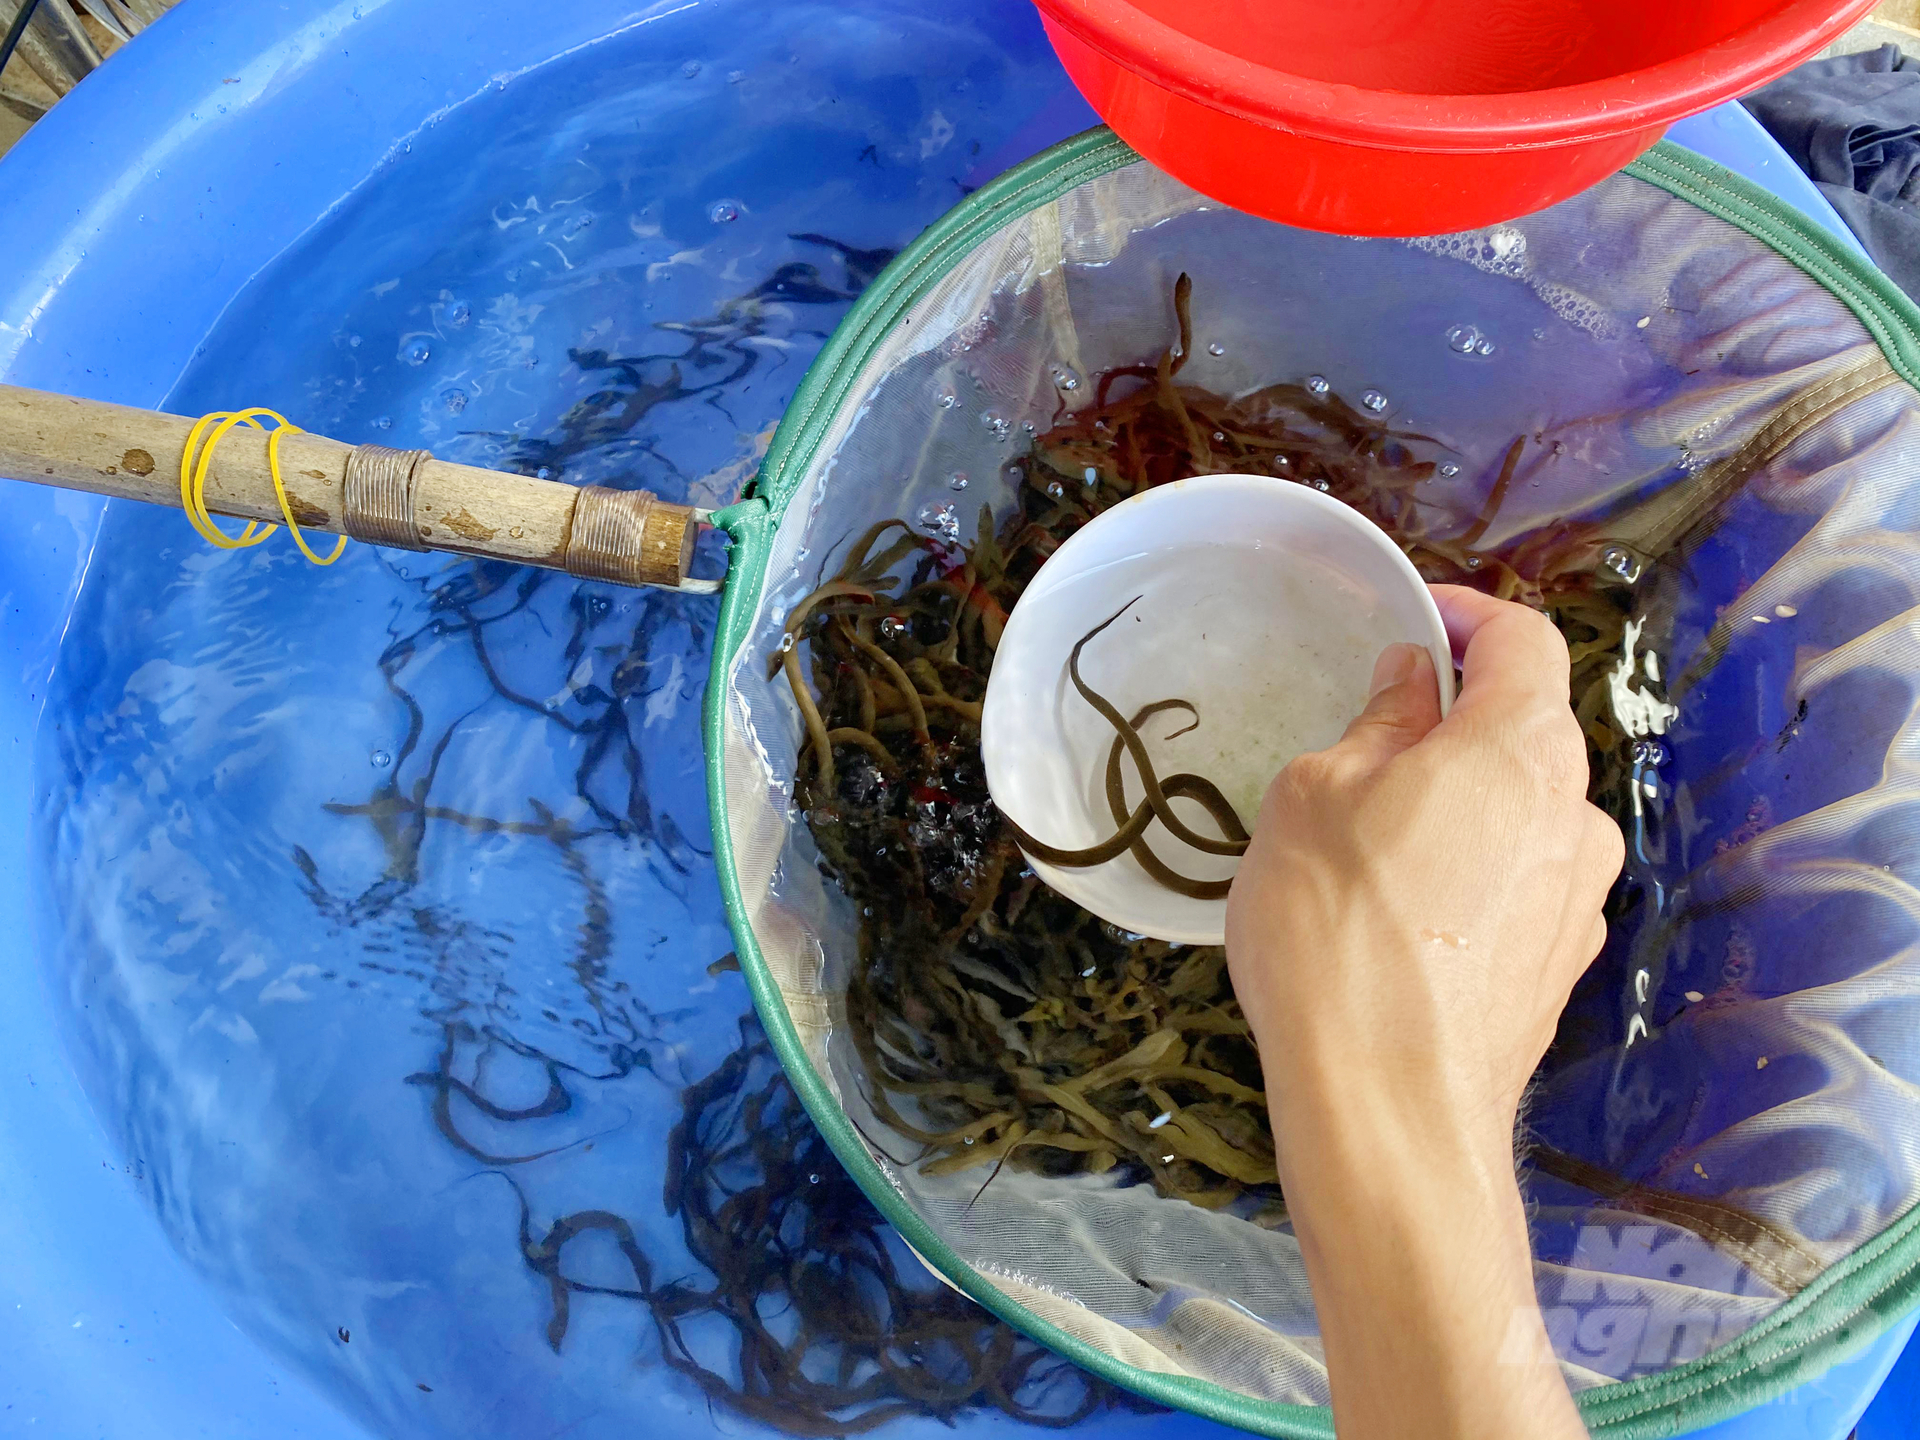 Hiện tại, với số lượng 130 bồn nuôi lươn giống, trang trại của anh Lộc mỗi năm cung cấp ra thị trường khoảng 1 triệu con giống cho bà con ở khu vực ĐBSCL.